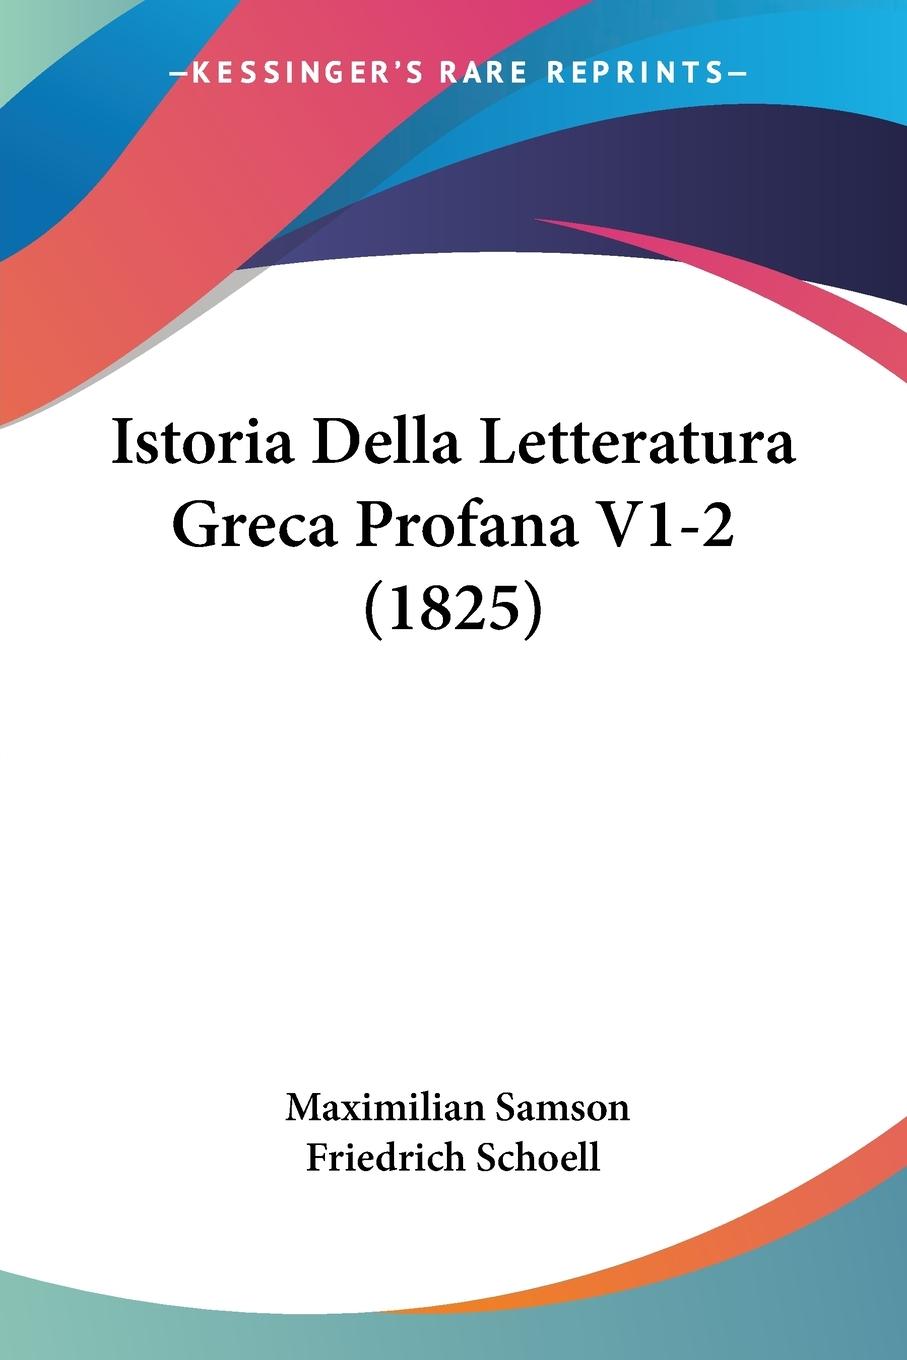 Istoria Della Letteratura Greca Profana V1-2 (1825) - Schoell, Maximilian Samson Friedrich